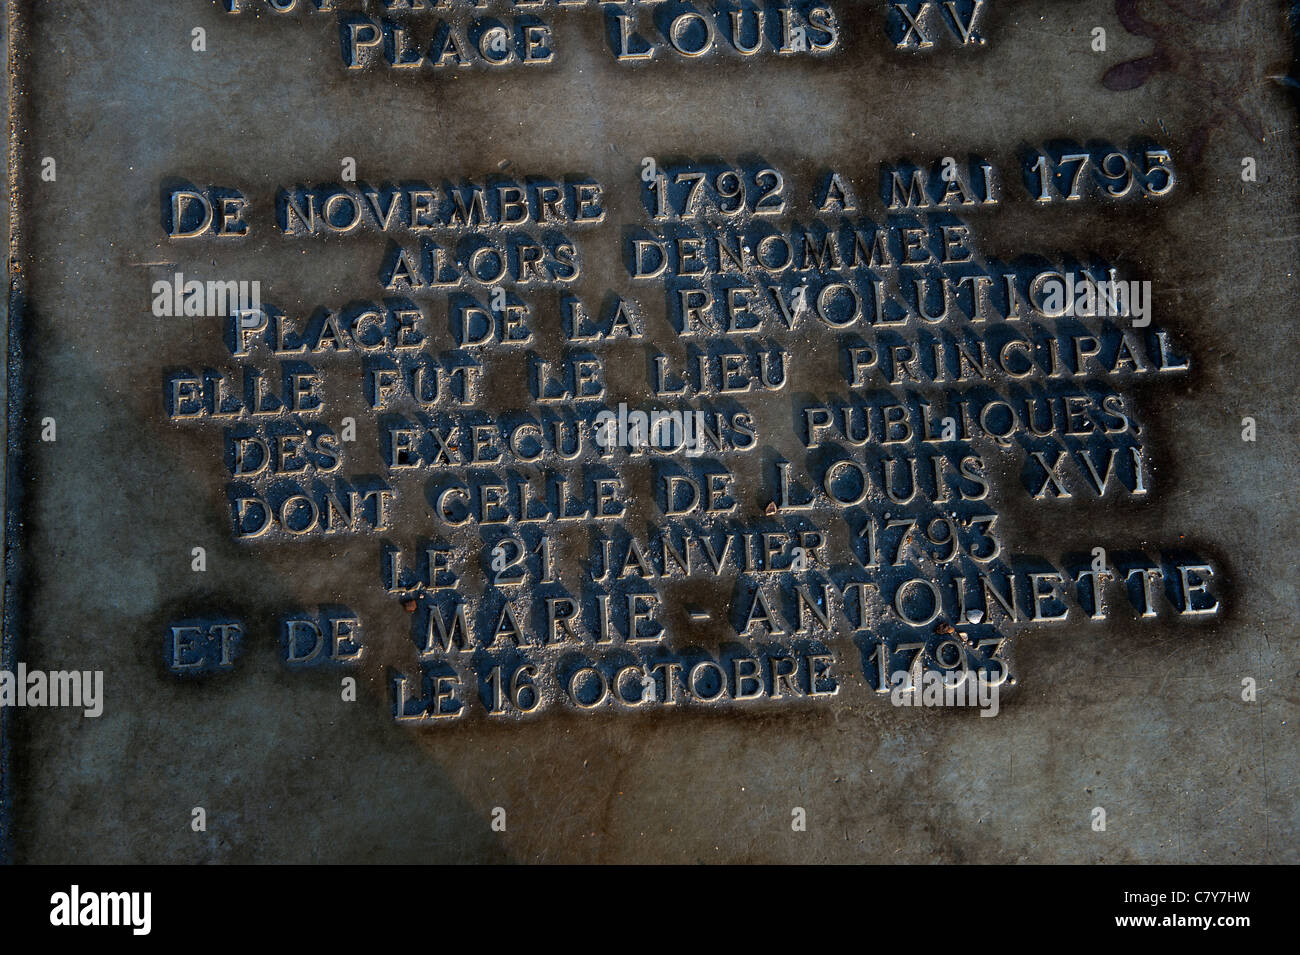 Paris france. Place de la Concorde showing the Execution Site in the revolution. Stock Photo